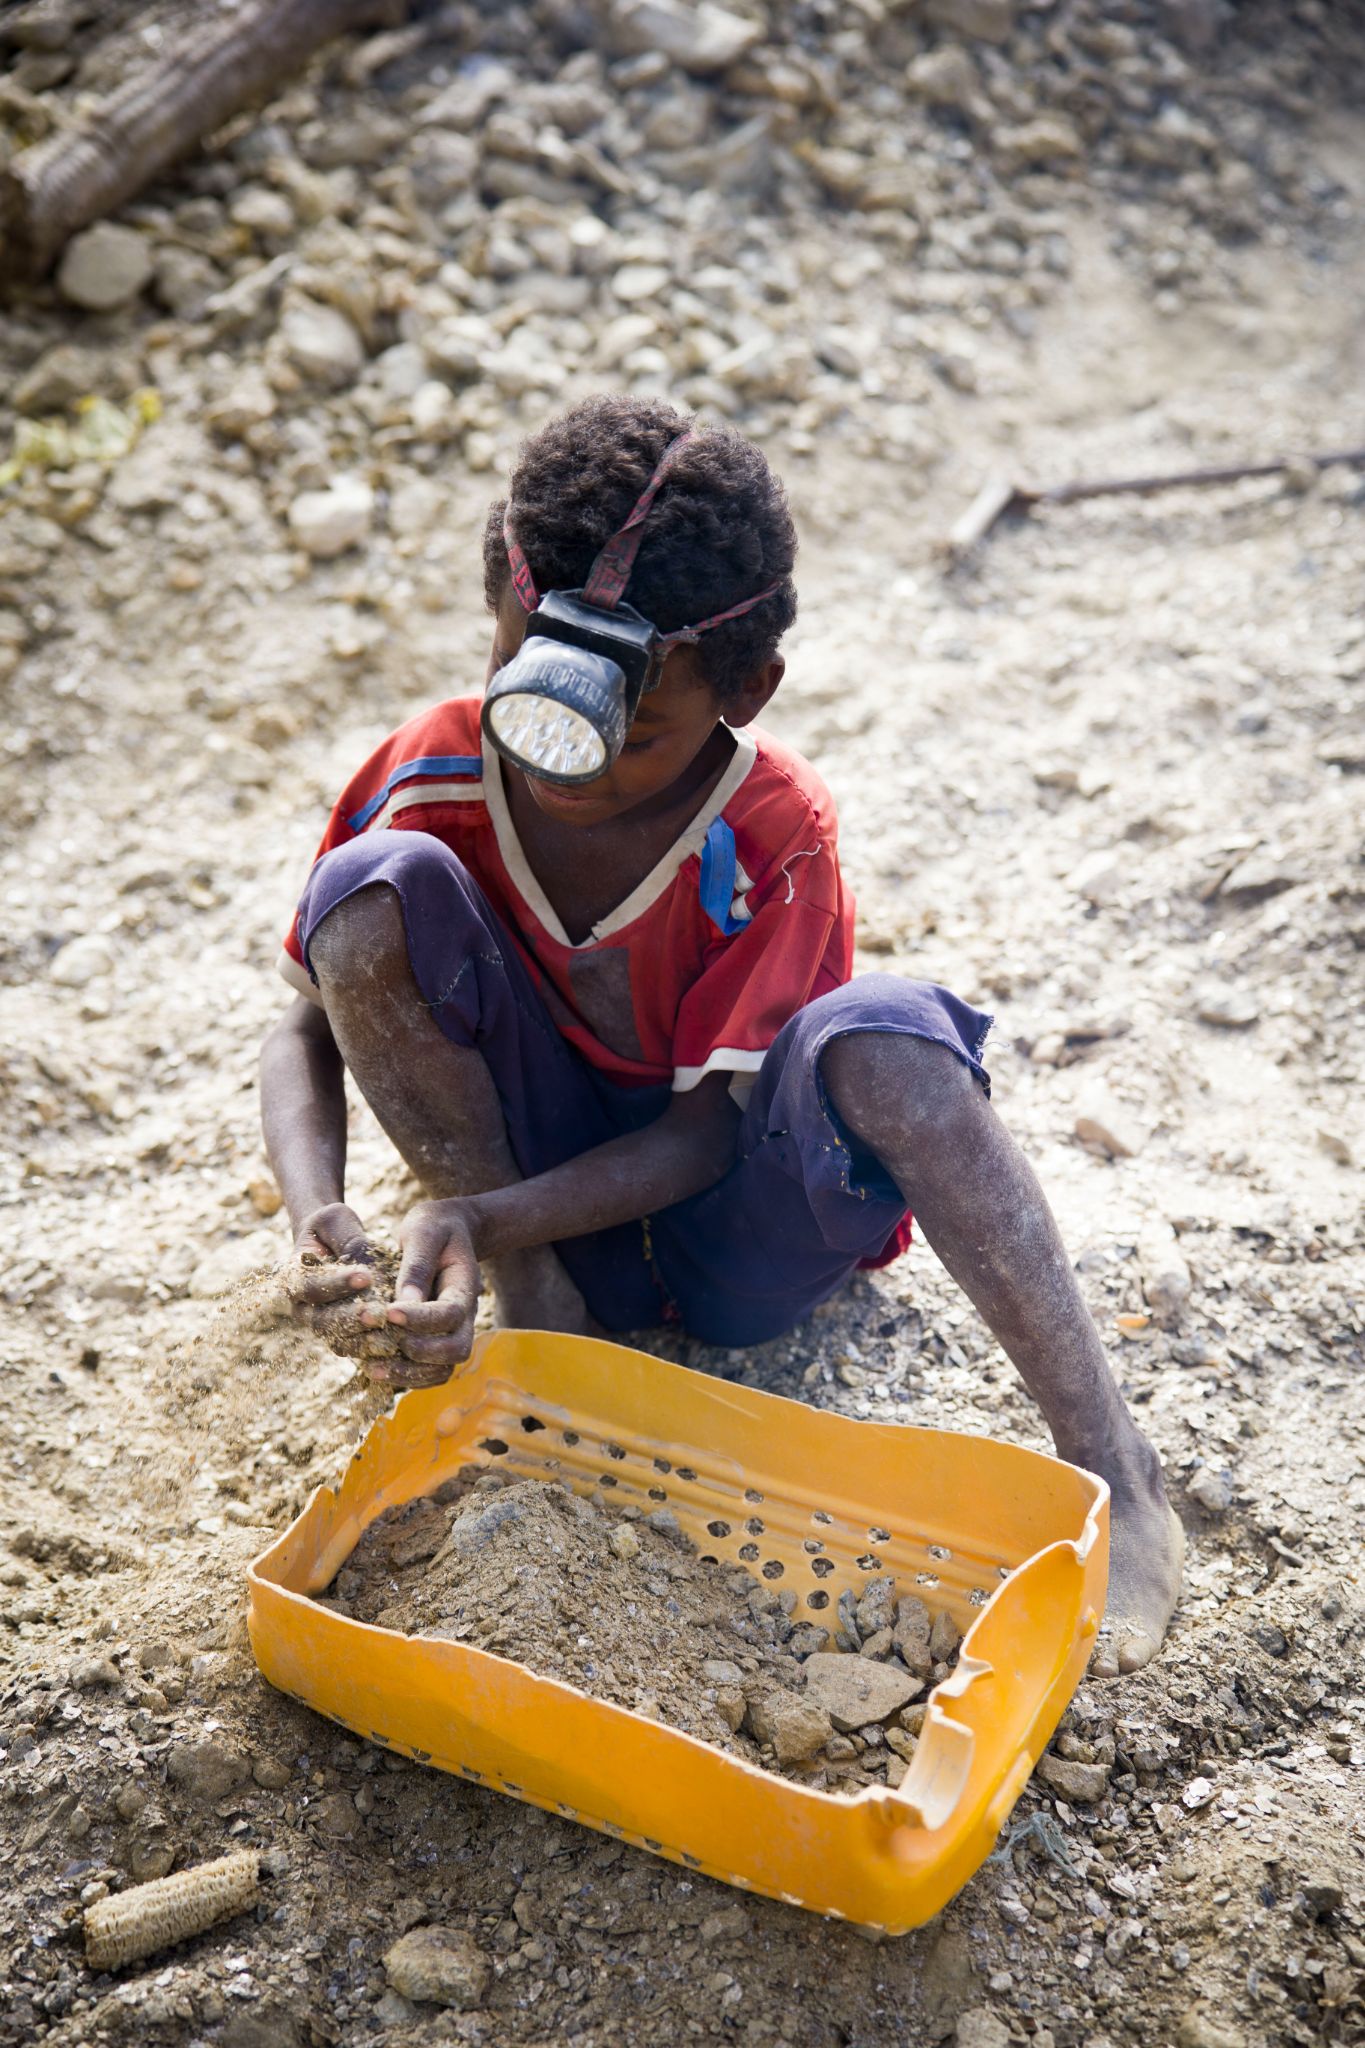 160 million children are still working in illegal mines: Survey reveals